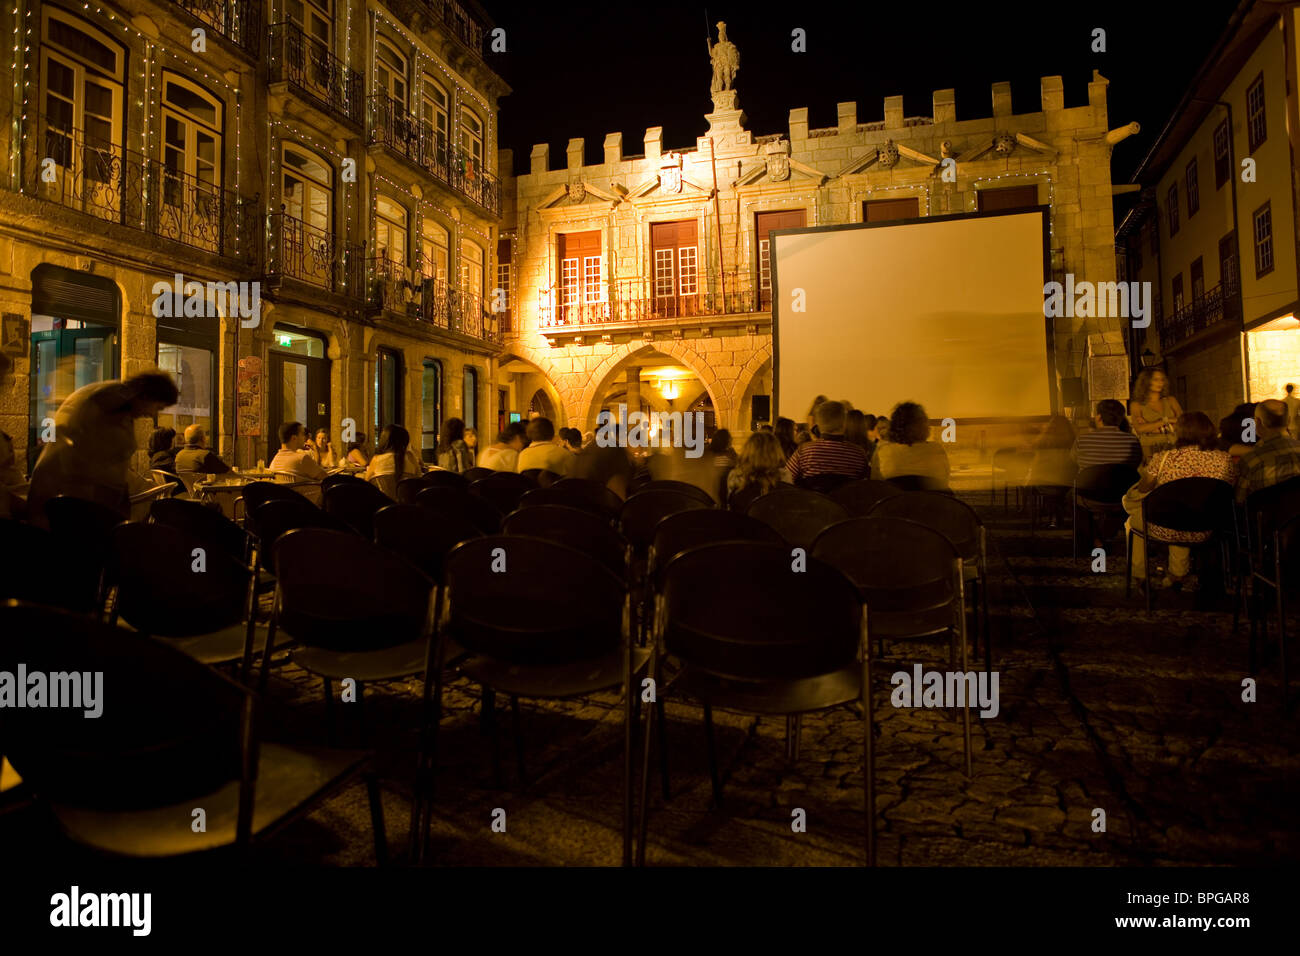 Cinema festival at night, main center of Guimaraes on Oliveira Square in Guimaraes, Portugal Stock Photo